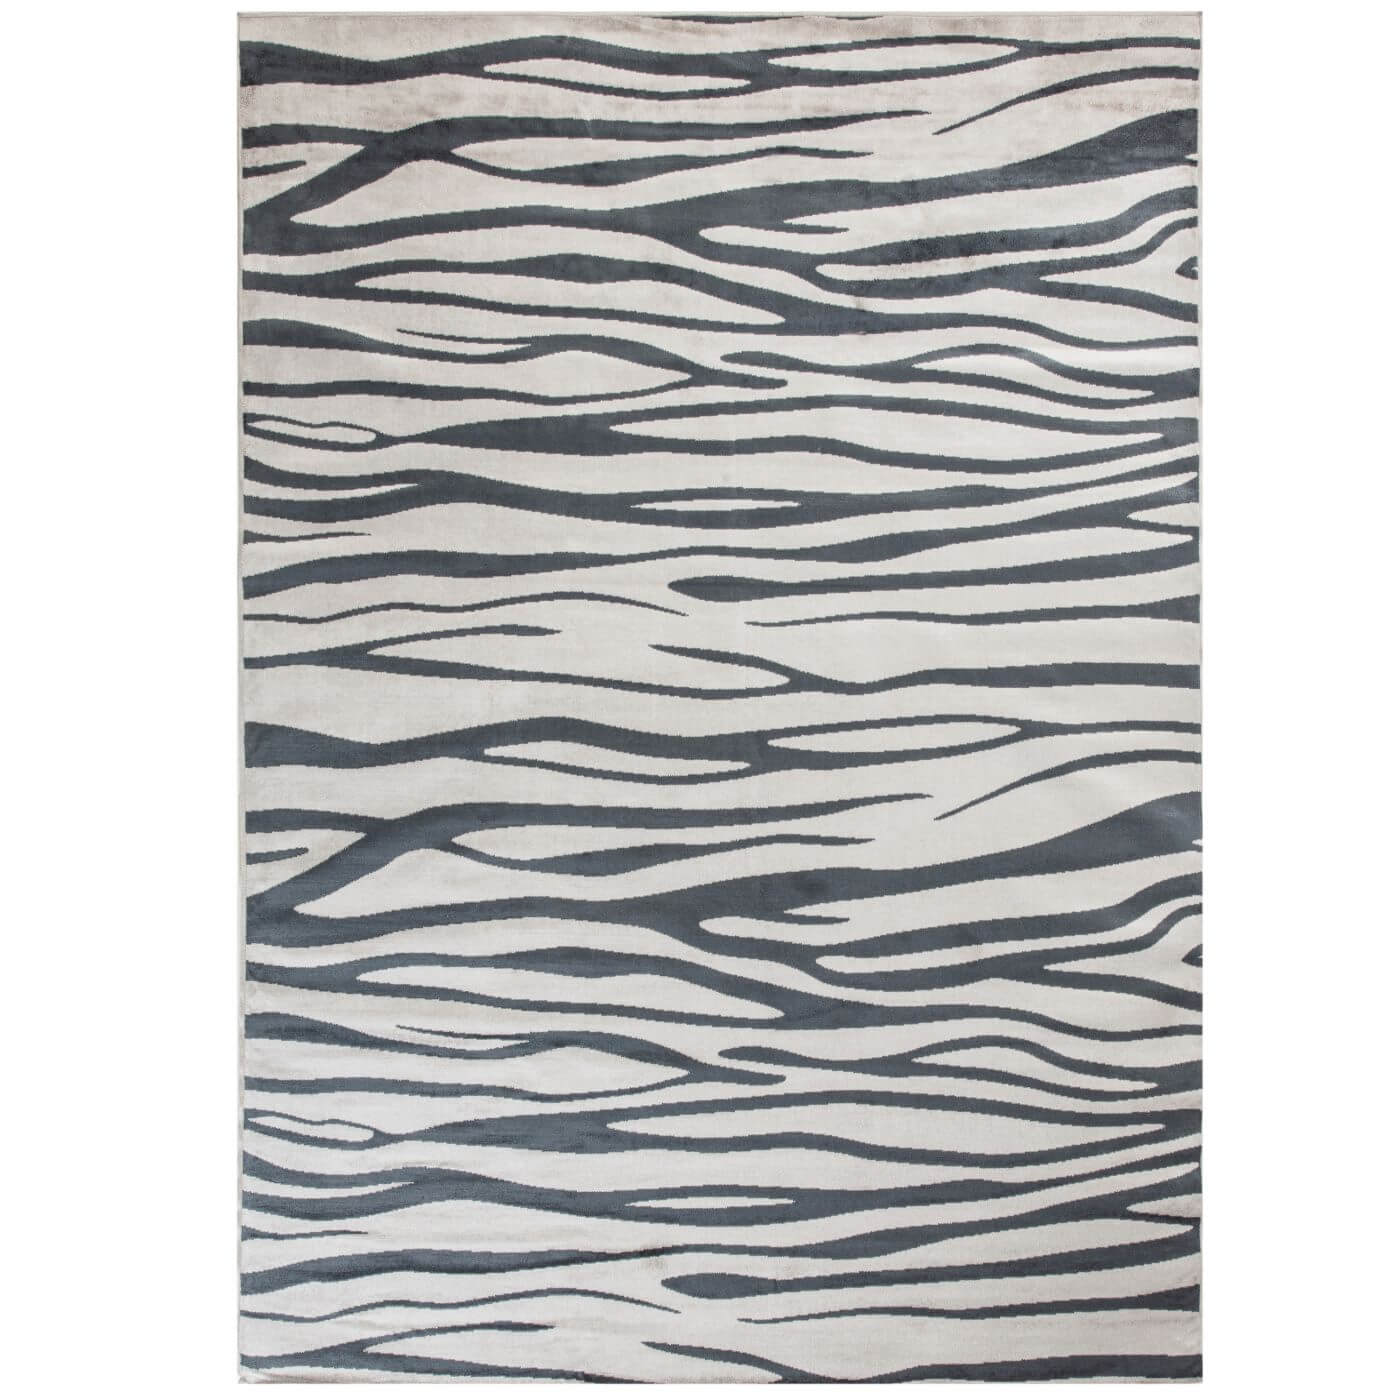 Dywan zebra EBONY. Przybliżenie dywanu z wiskozy w nowoczesny nieregularny wzór w kolorach jasnych i ciemno szarych. Skandynawskie wzornictwo